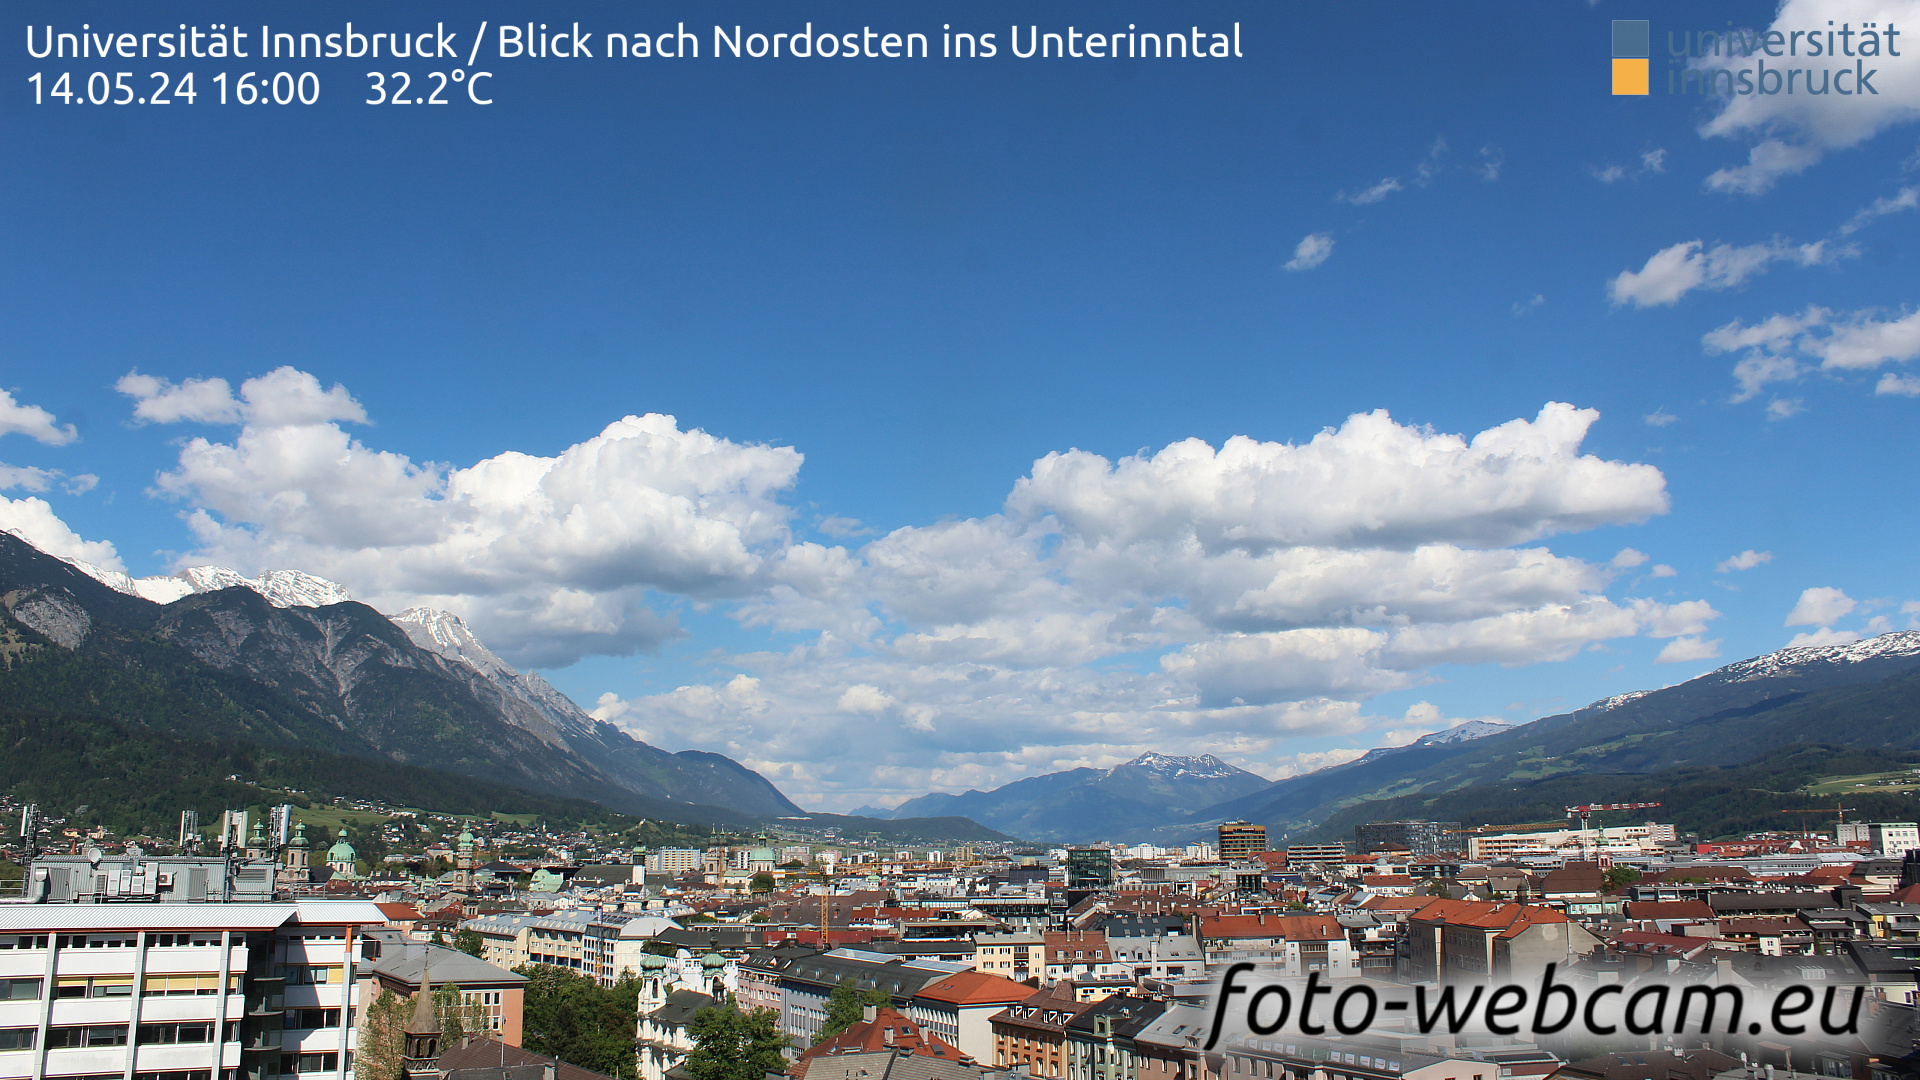 Innsbruck Thu. 16:06